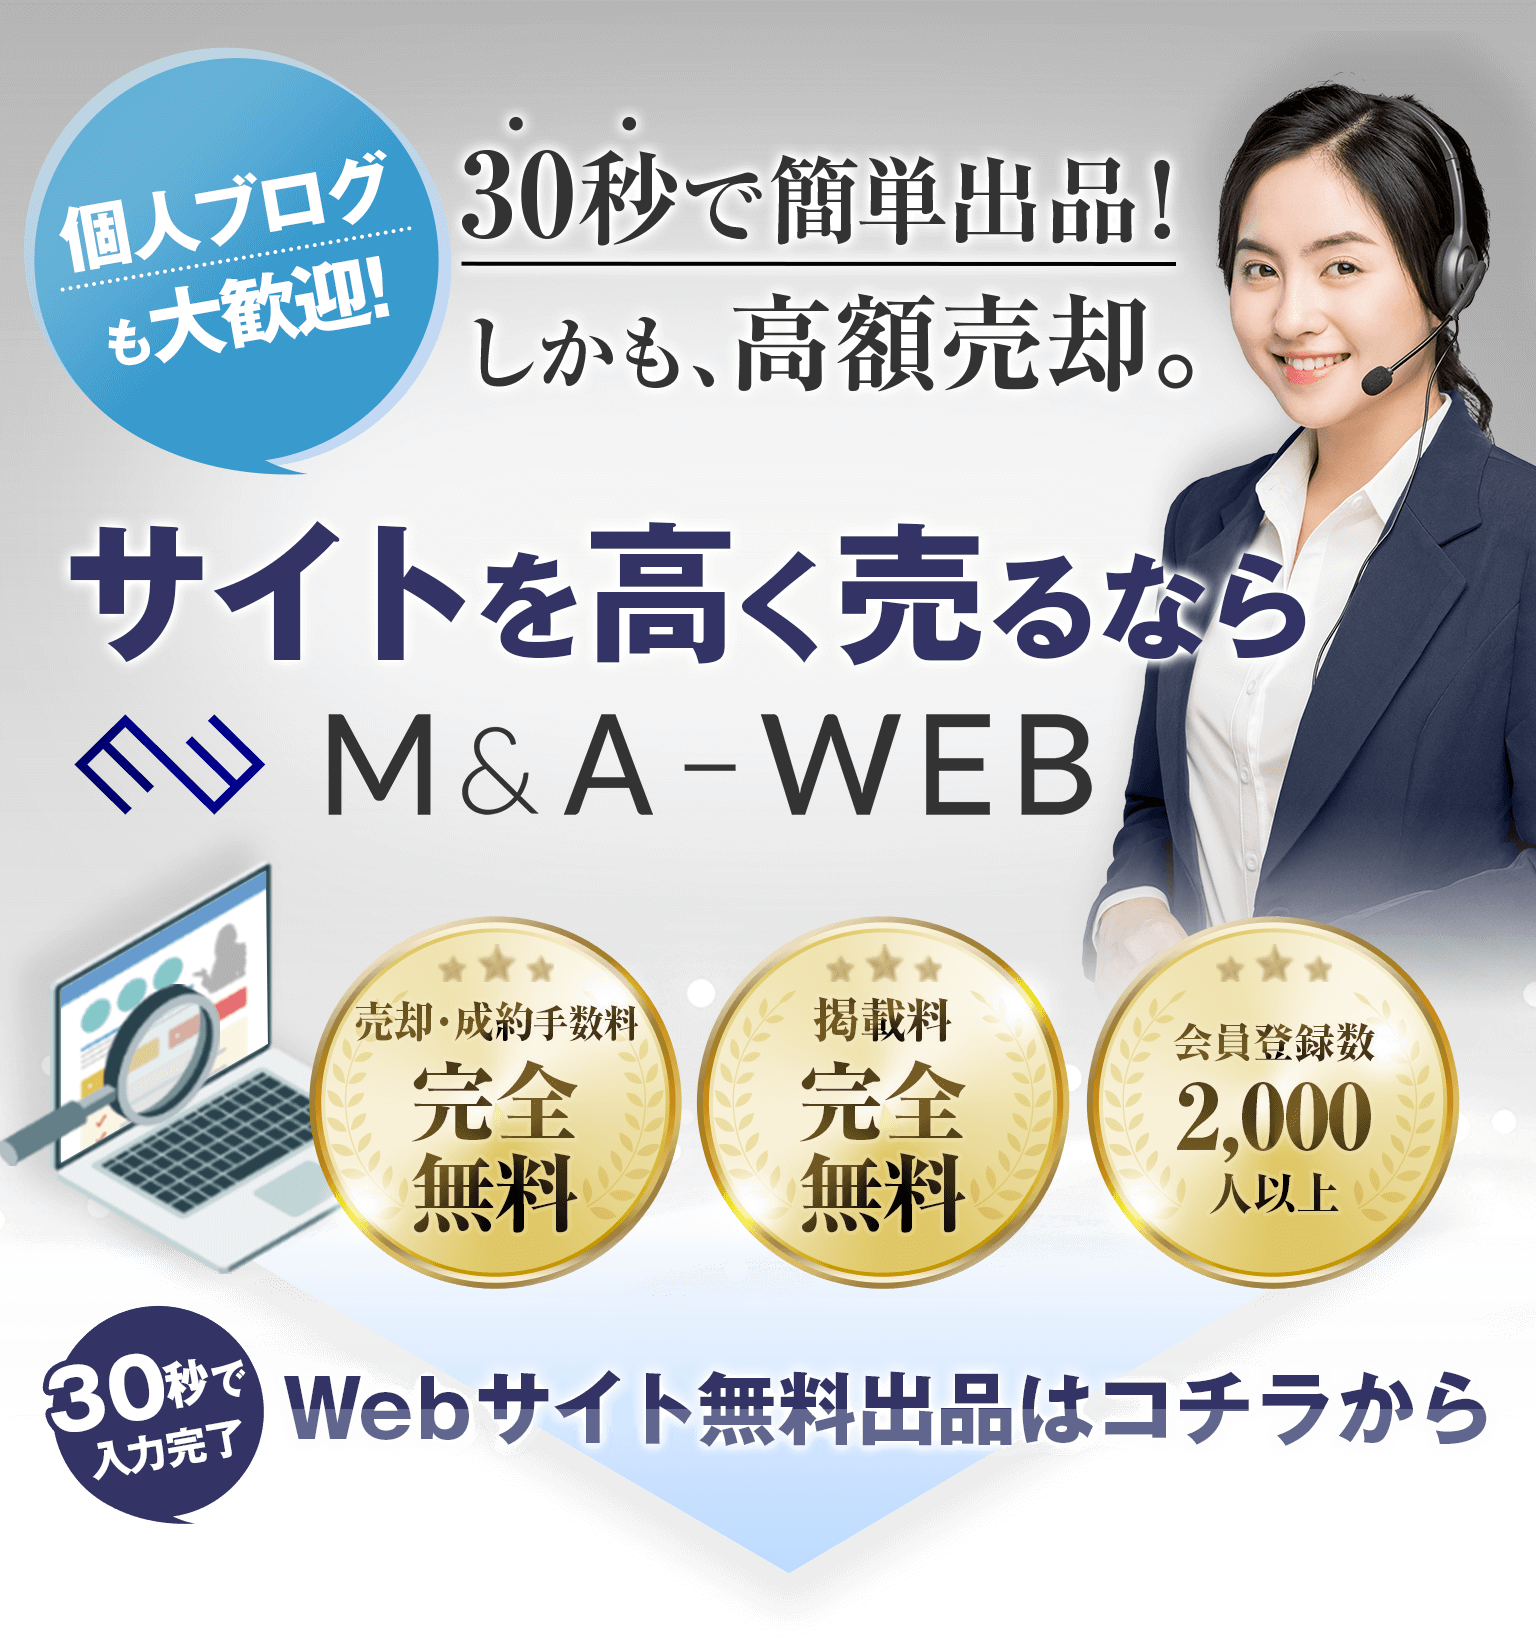 M&A-WEBなら高額査定が可能！経験豊富なプロによるWebサイト査定